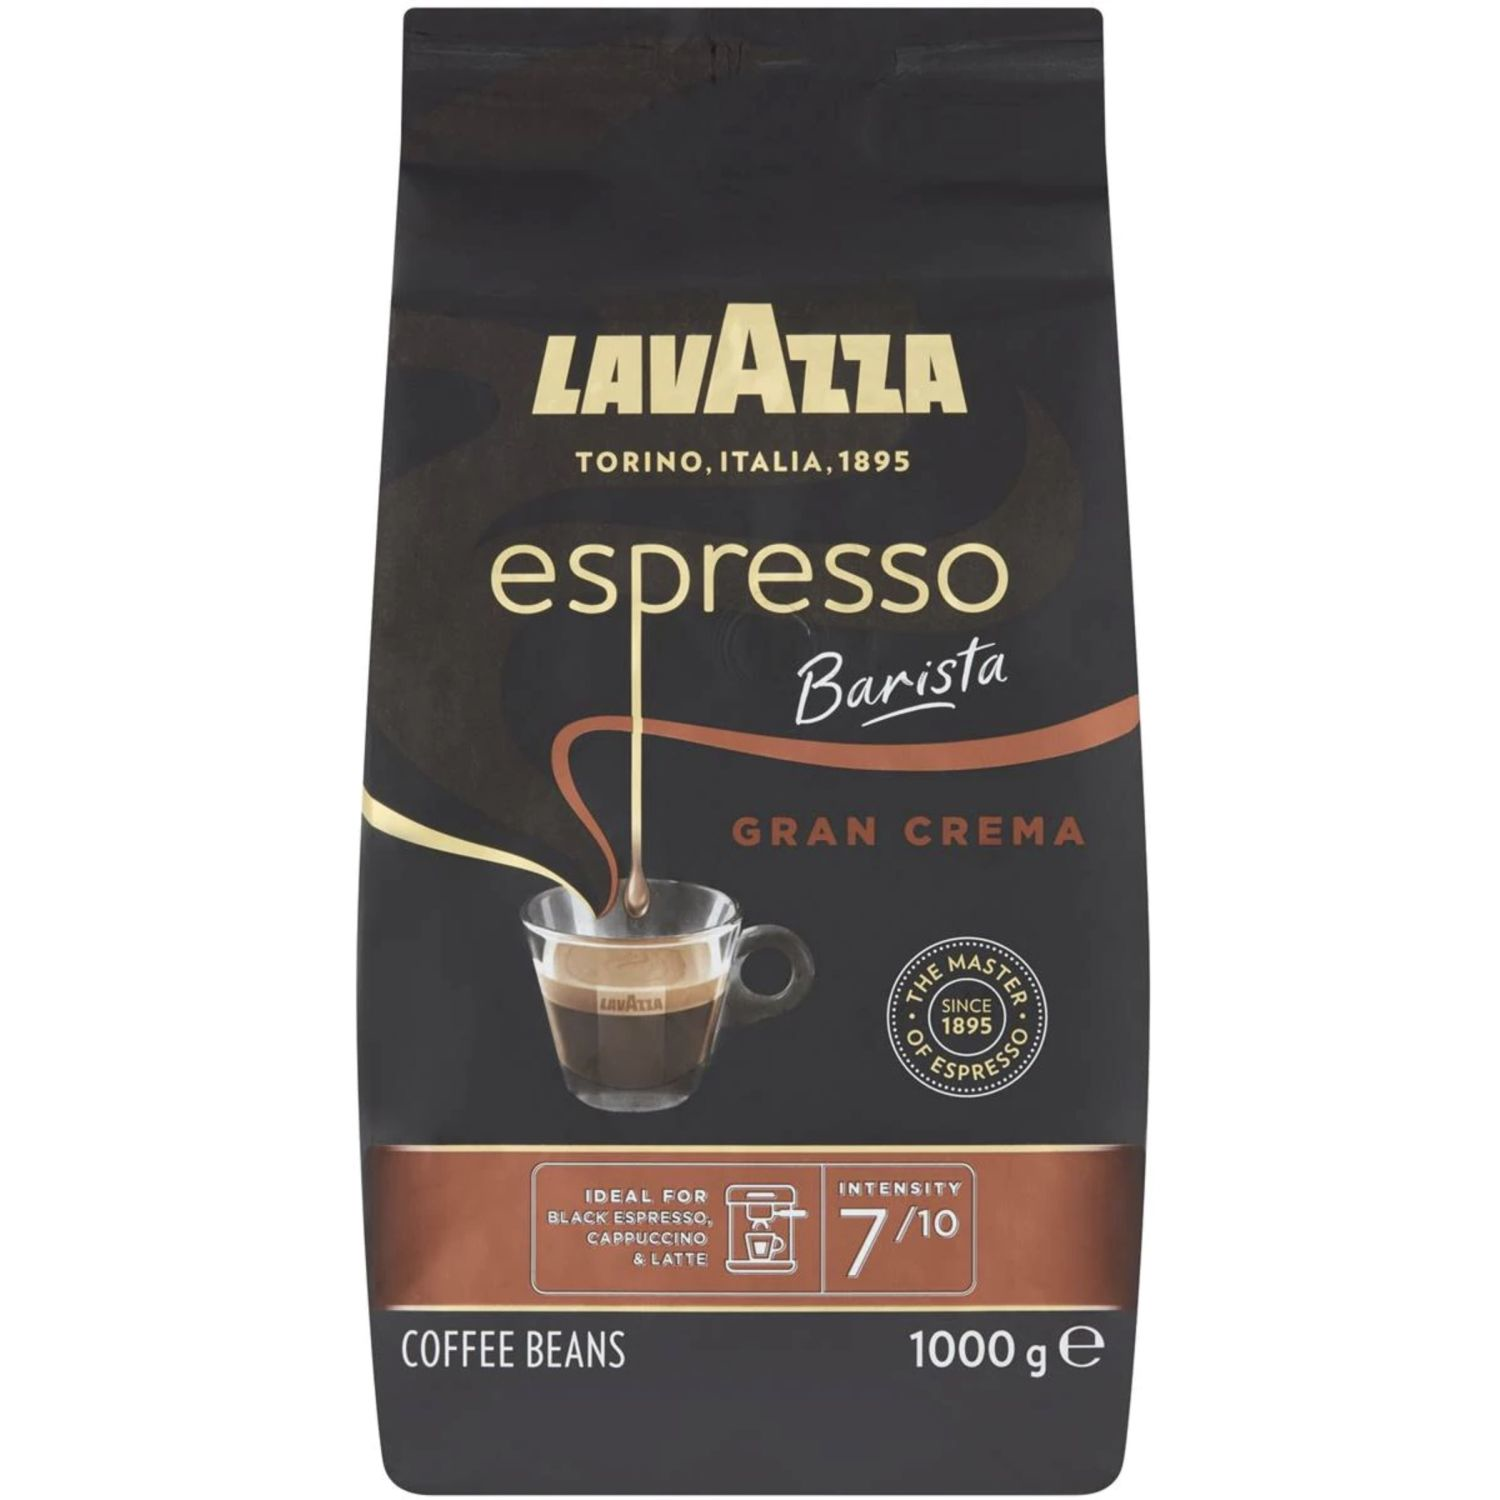 Lavazza Espresso Barista Gran Crema Coffee Beans, 1 Kilogram